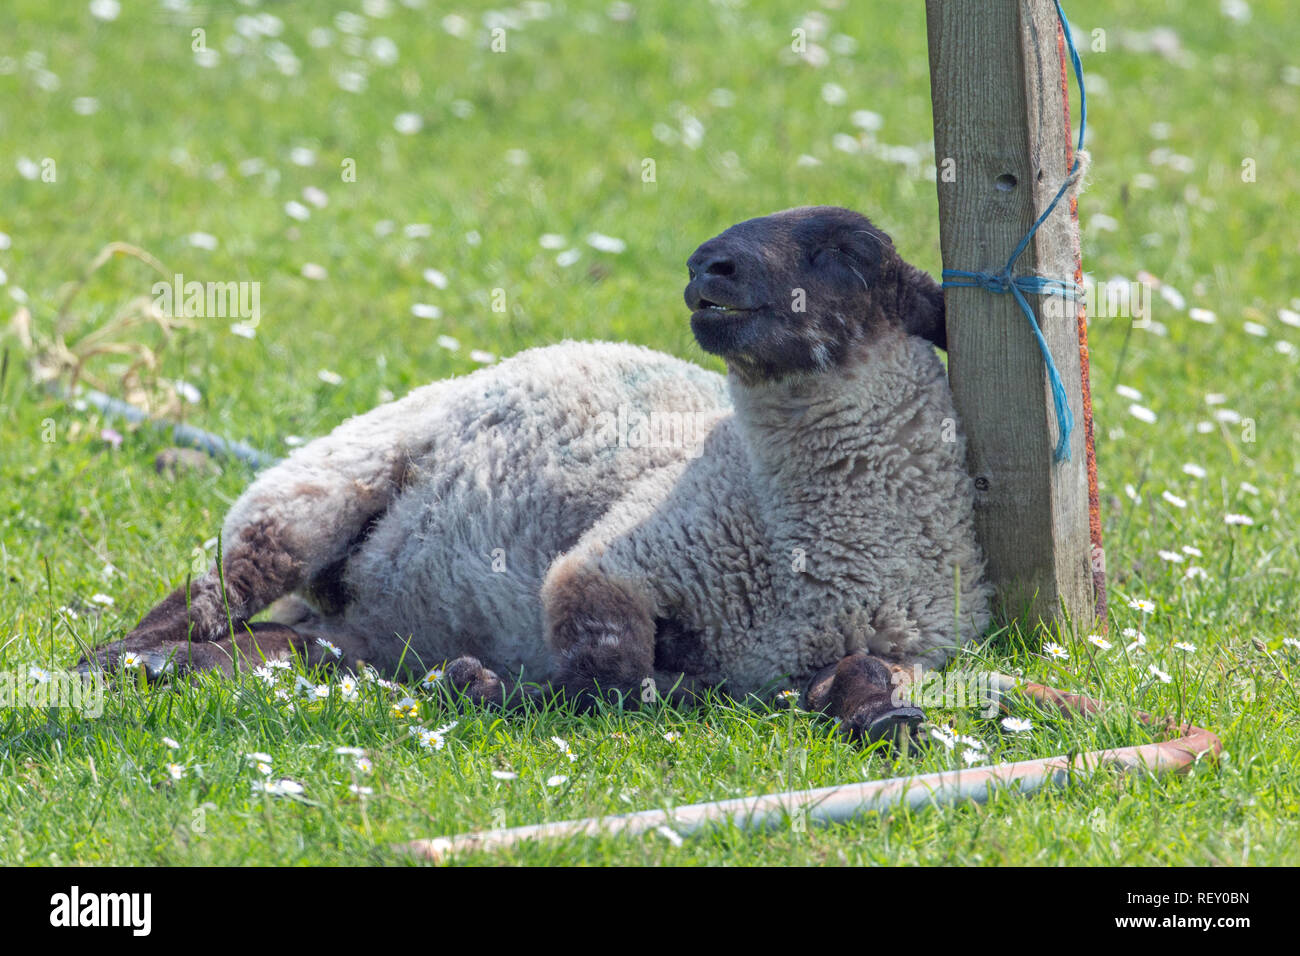 ​Sheep (Ovis aries), leiden unter außergewöhnlich hohe Wärmebelastung und eine fehlende Abdeckung oder Schatten Verfügbarkeit in einem offenen Feld Situation. Schiefe und stützte sich gegen eine redundante Zaunpfahl. Stockfoto